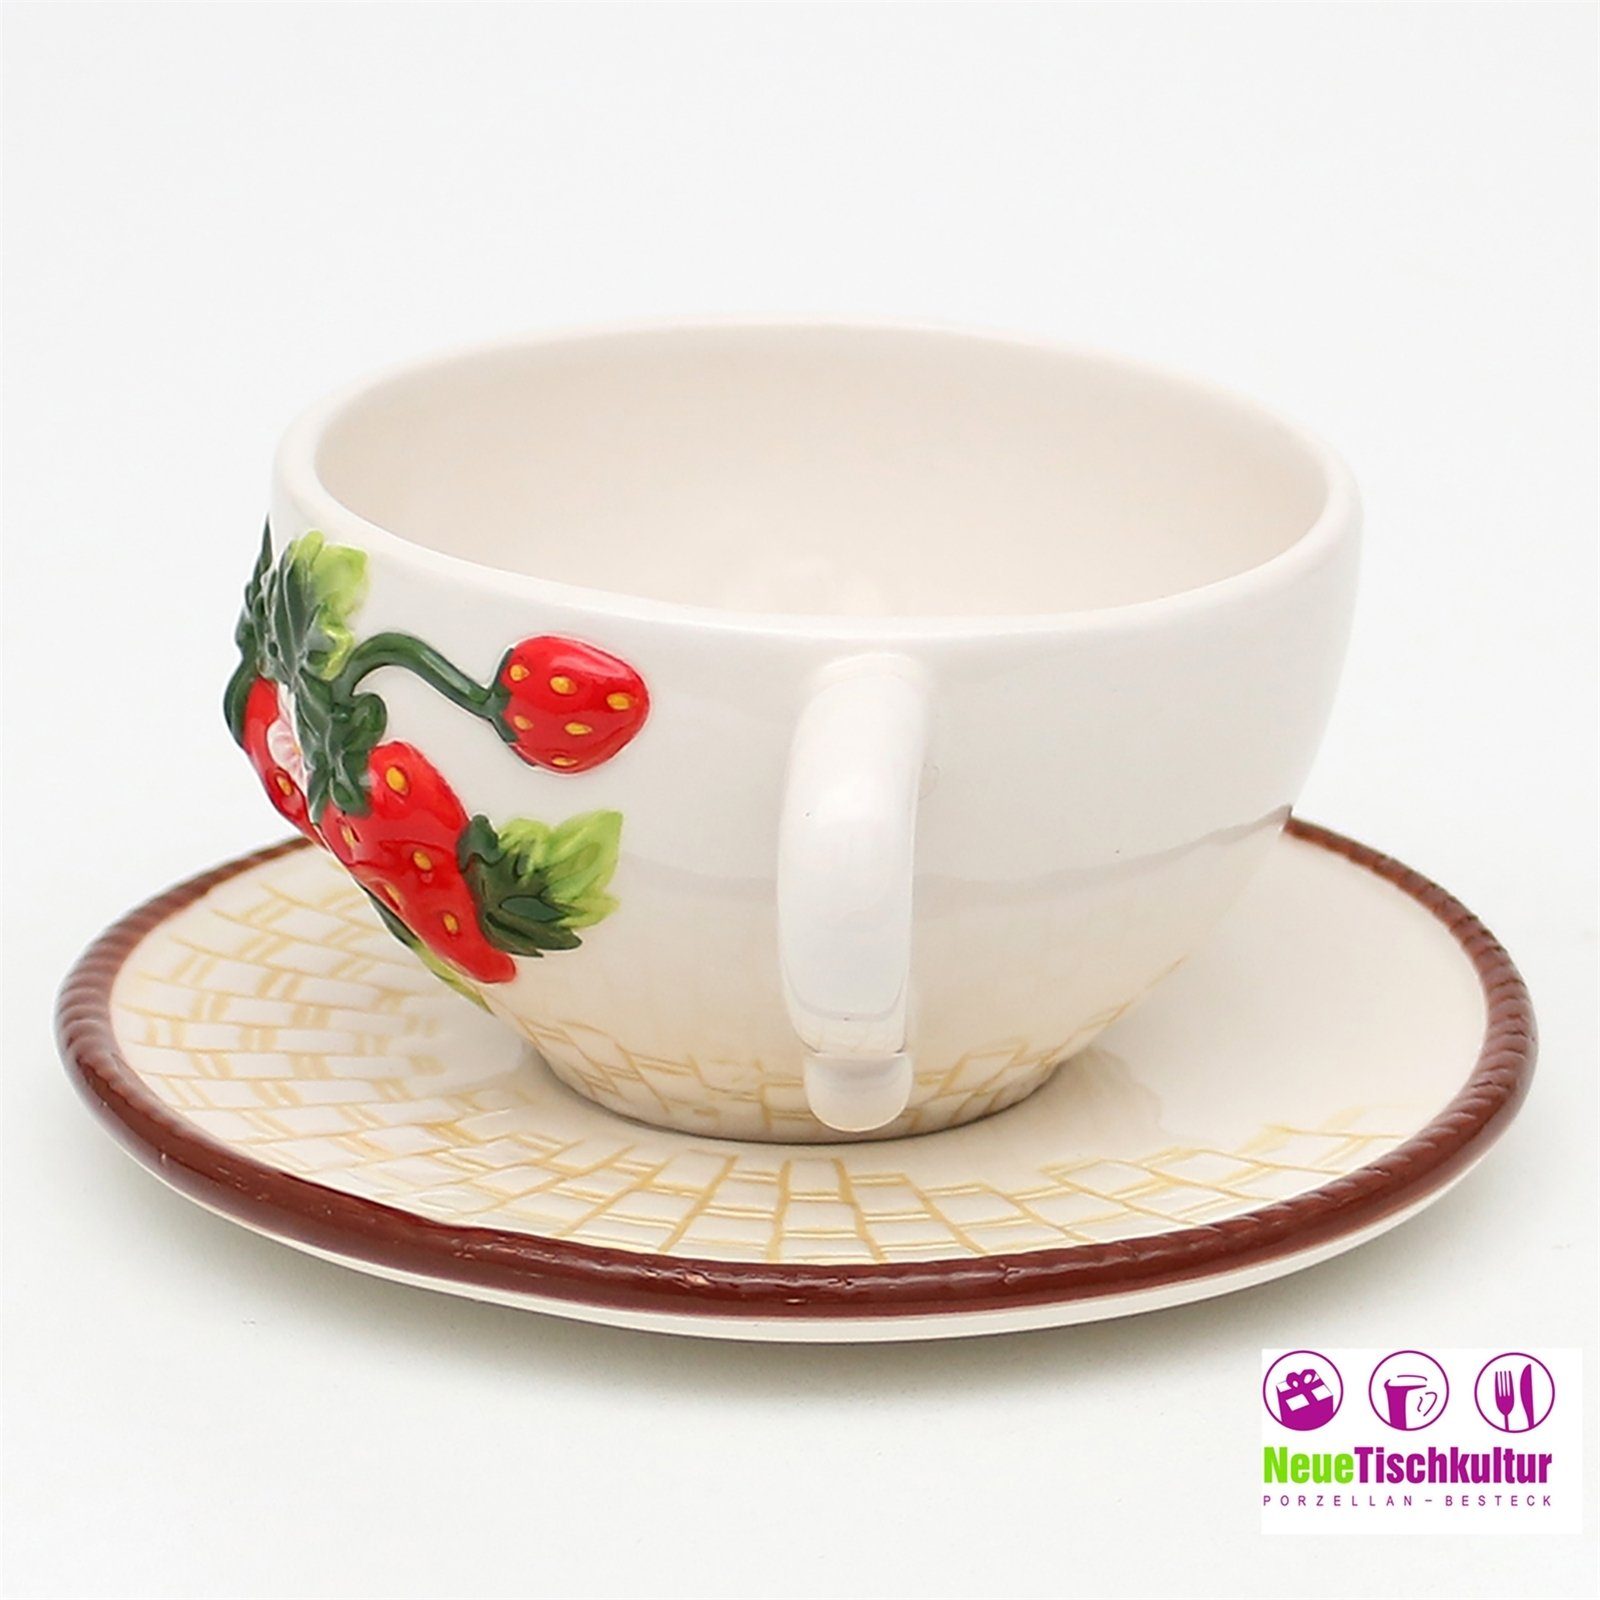 mit Kaffeetasse Keramik, Keramik Tassen-Set Erdbeere, Neuetischkultur Teetasse 2-teilig, Untertasse Tasse